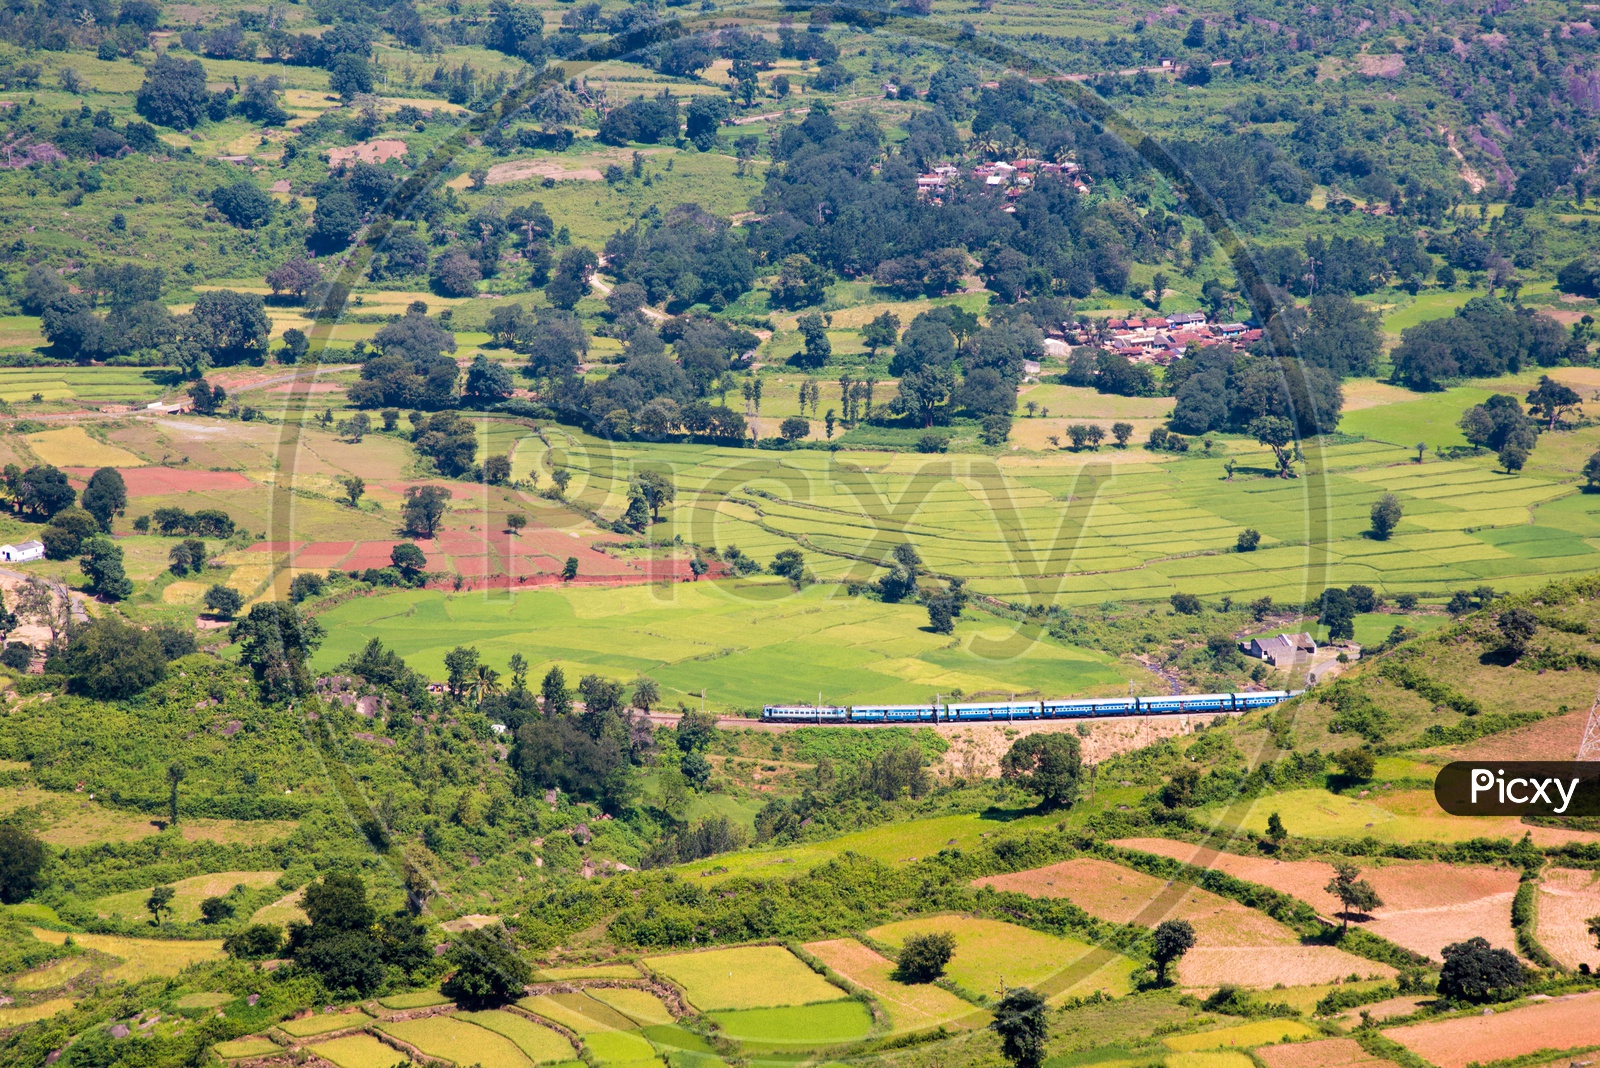 Kirandaul Express passing through Araku Valley